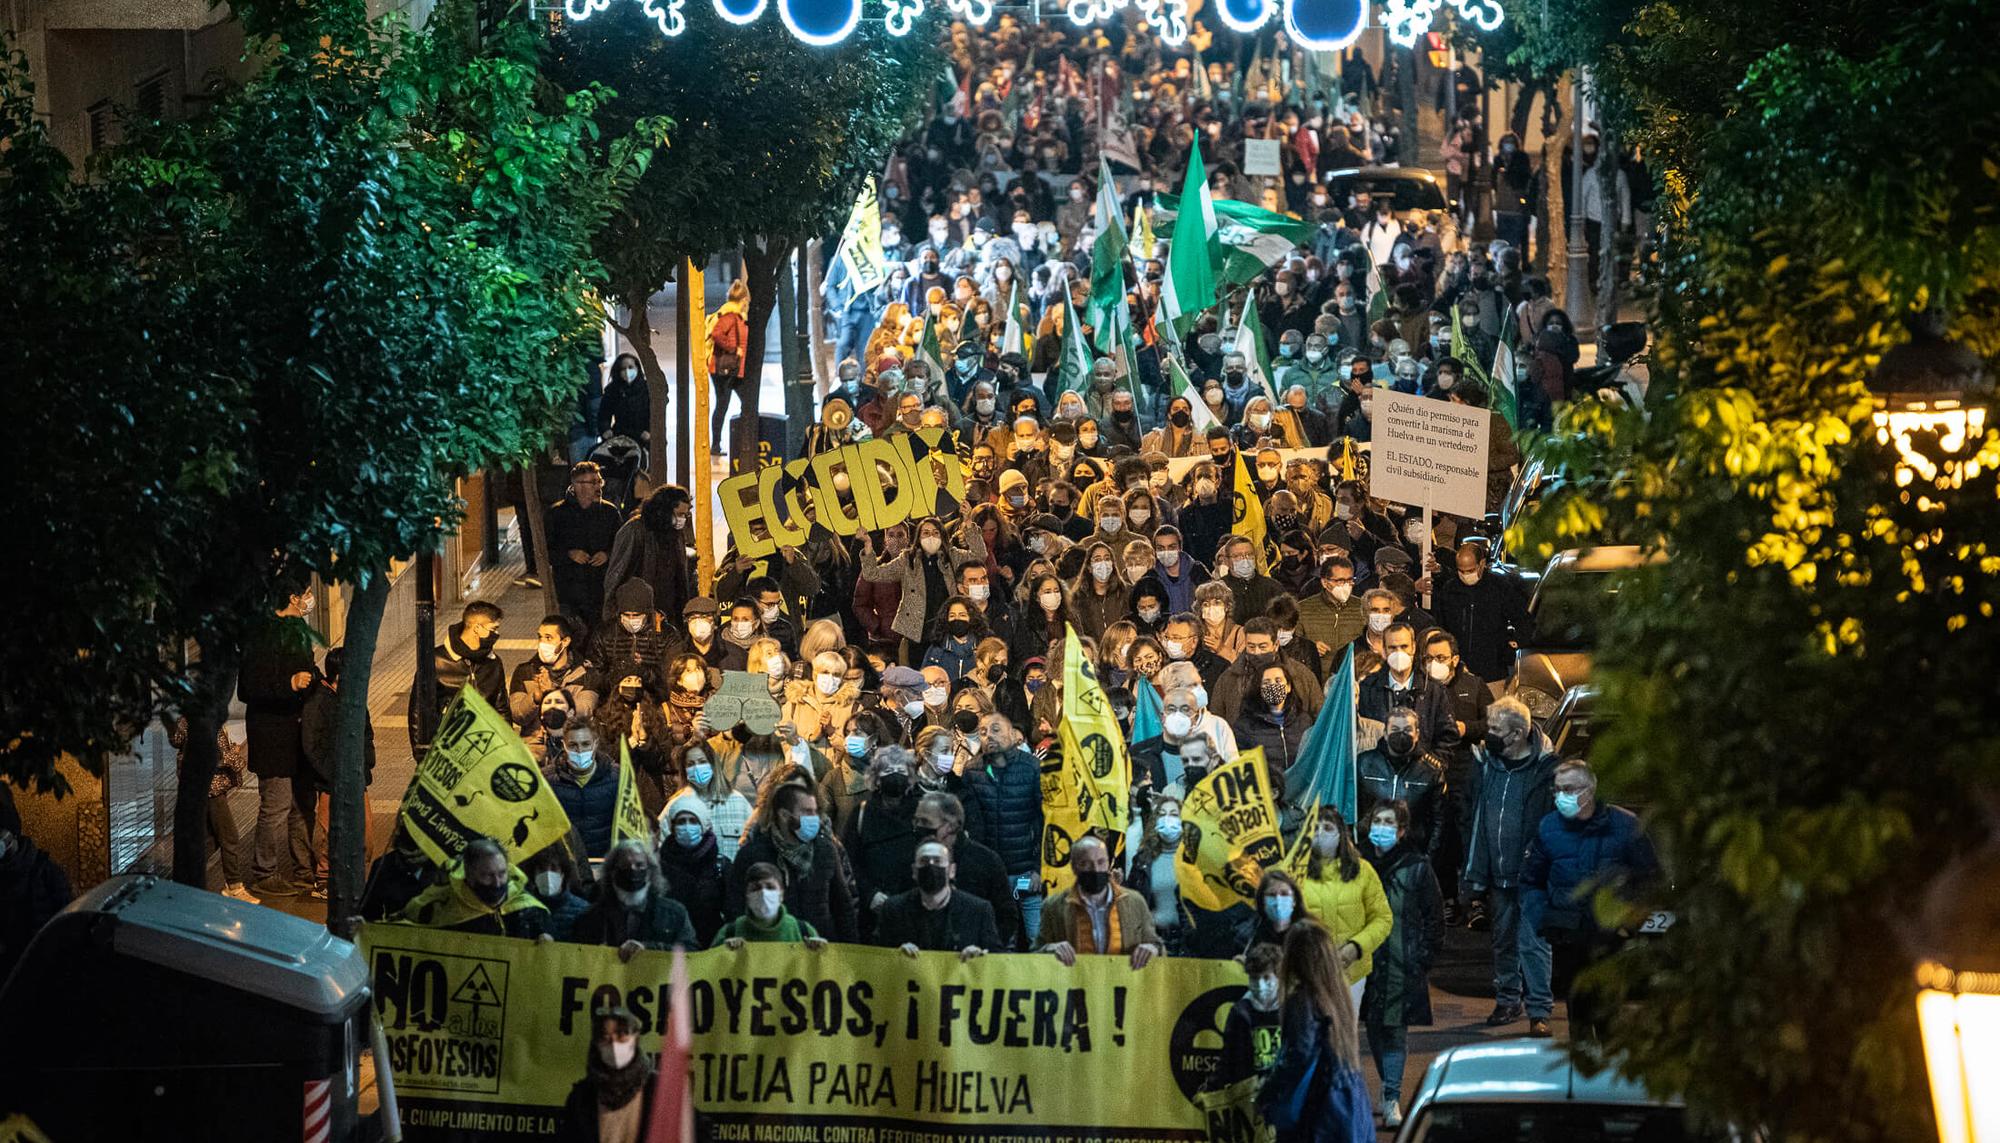 Manifestación Huelva fosfoyesos diciembre 2021